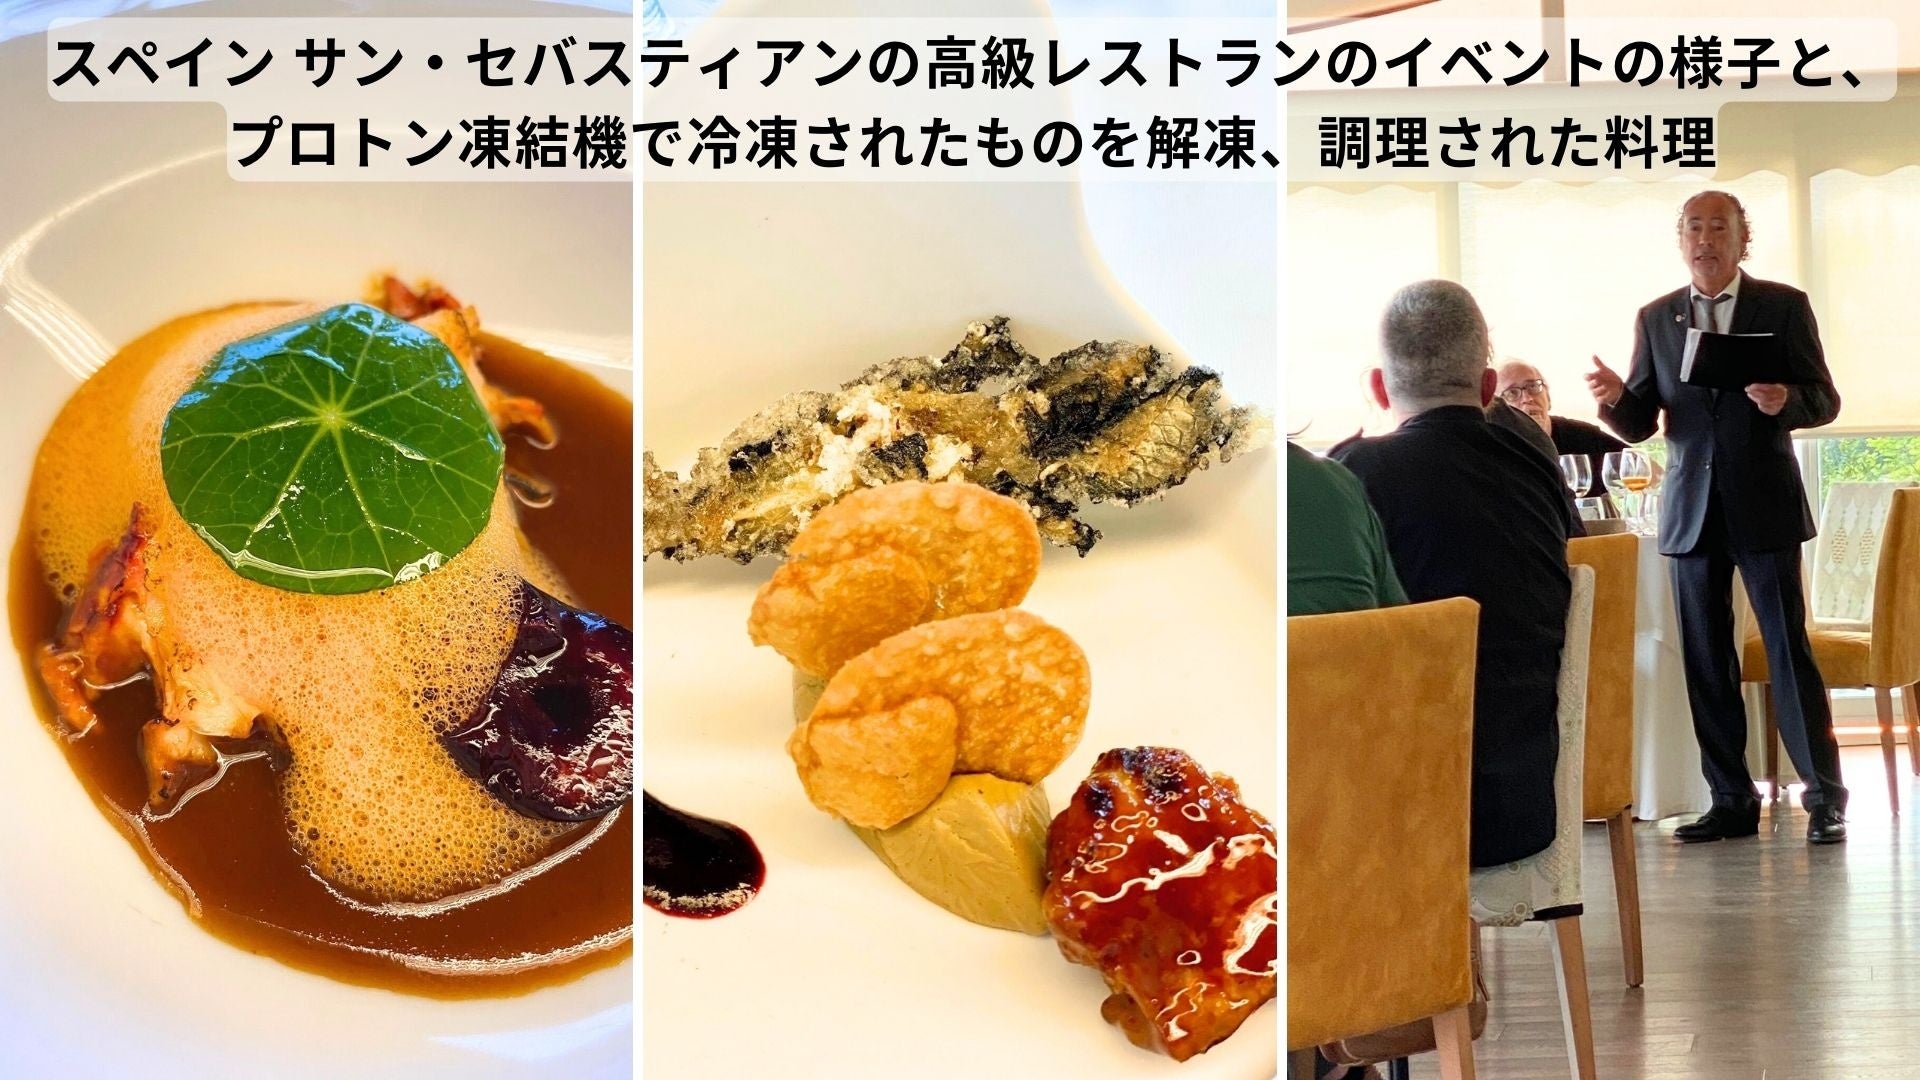 日本のプロトン凍結技術が美食の街バスクに新たな食の時代を切り開く スペイン サン・セバスティアンの高級レストランにて発表イベント開催